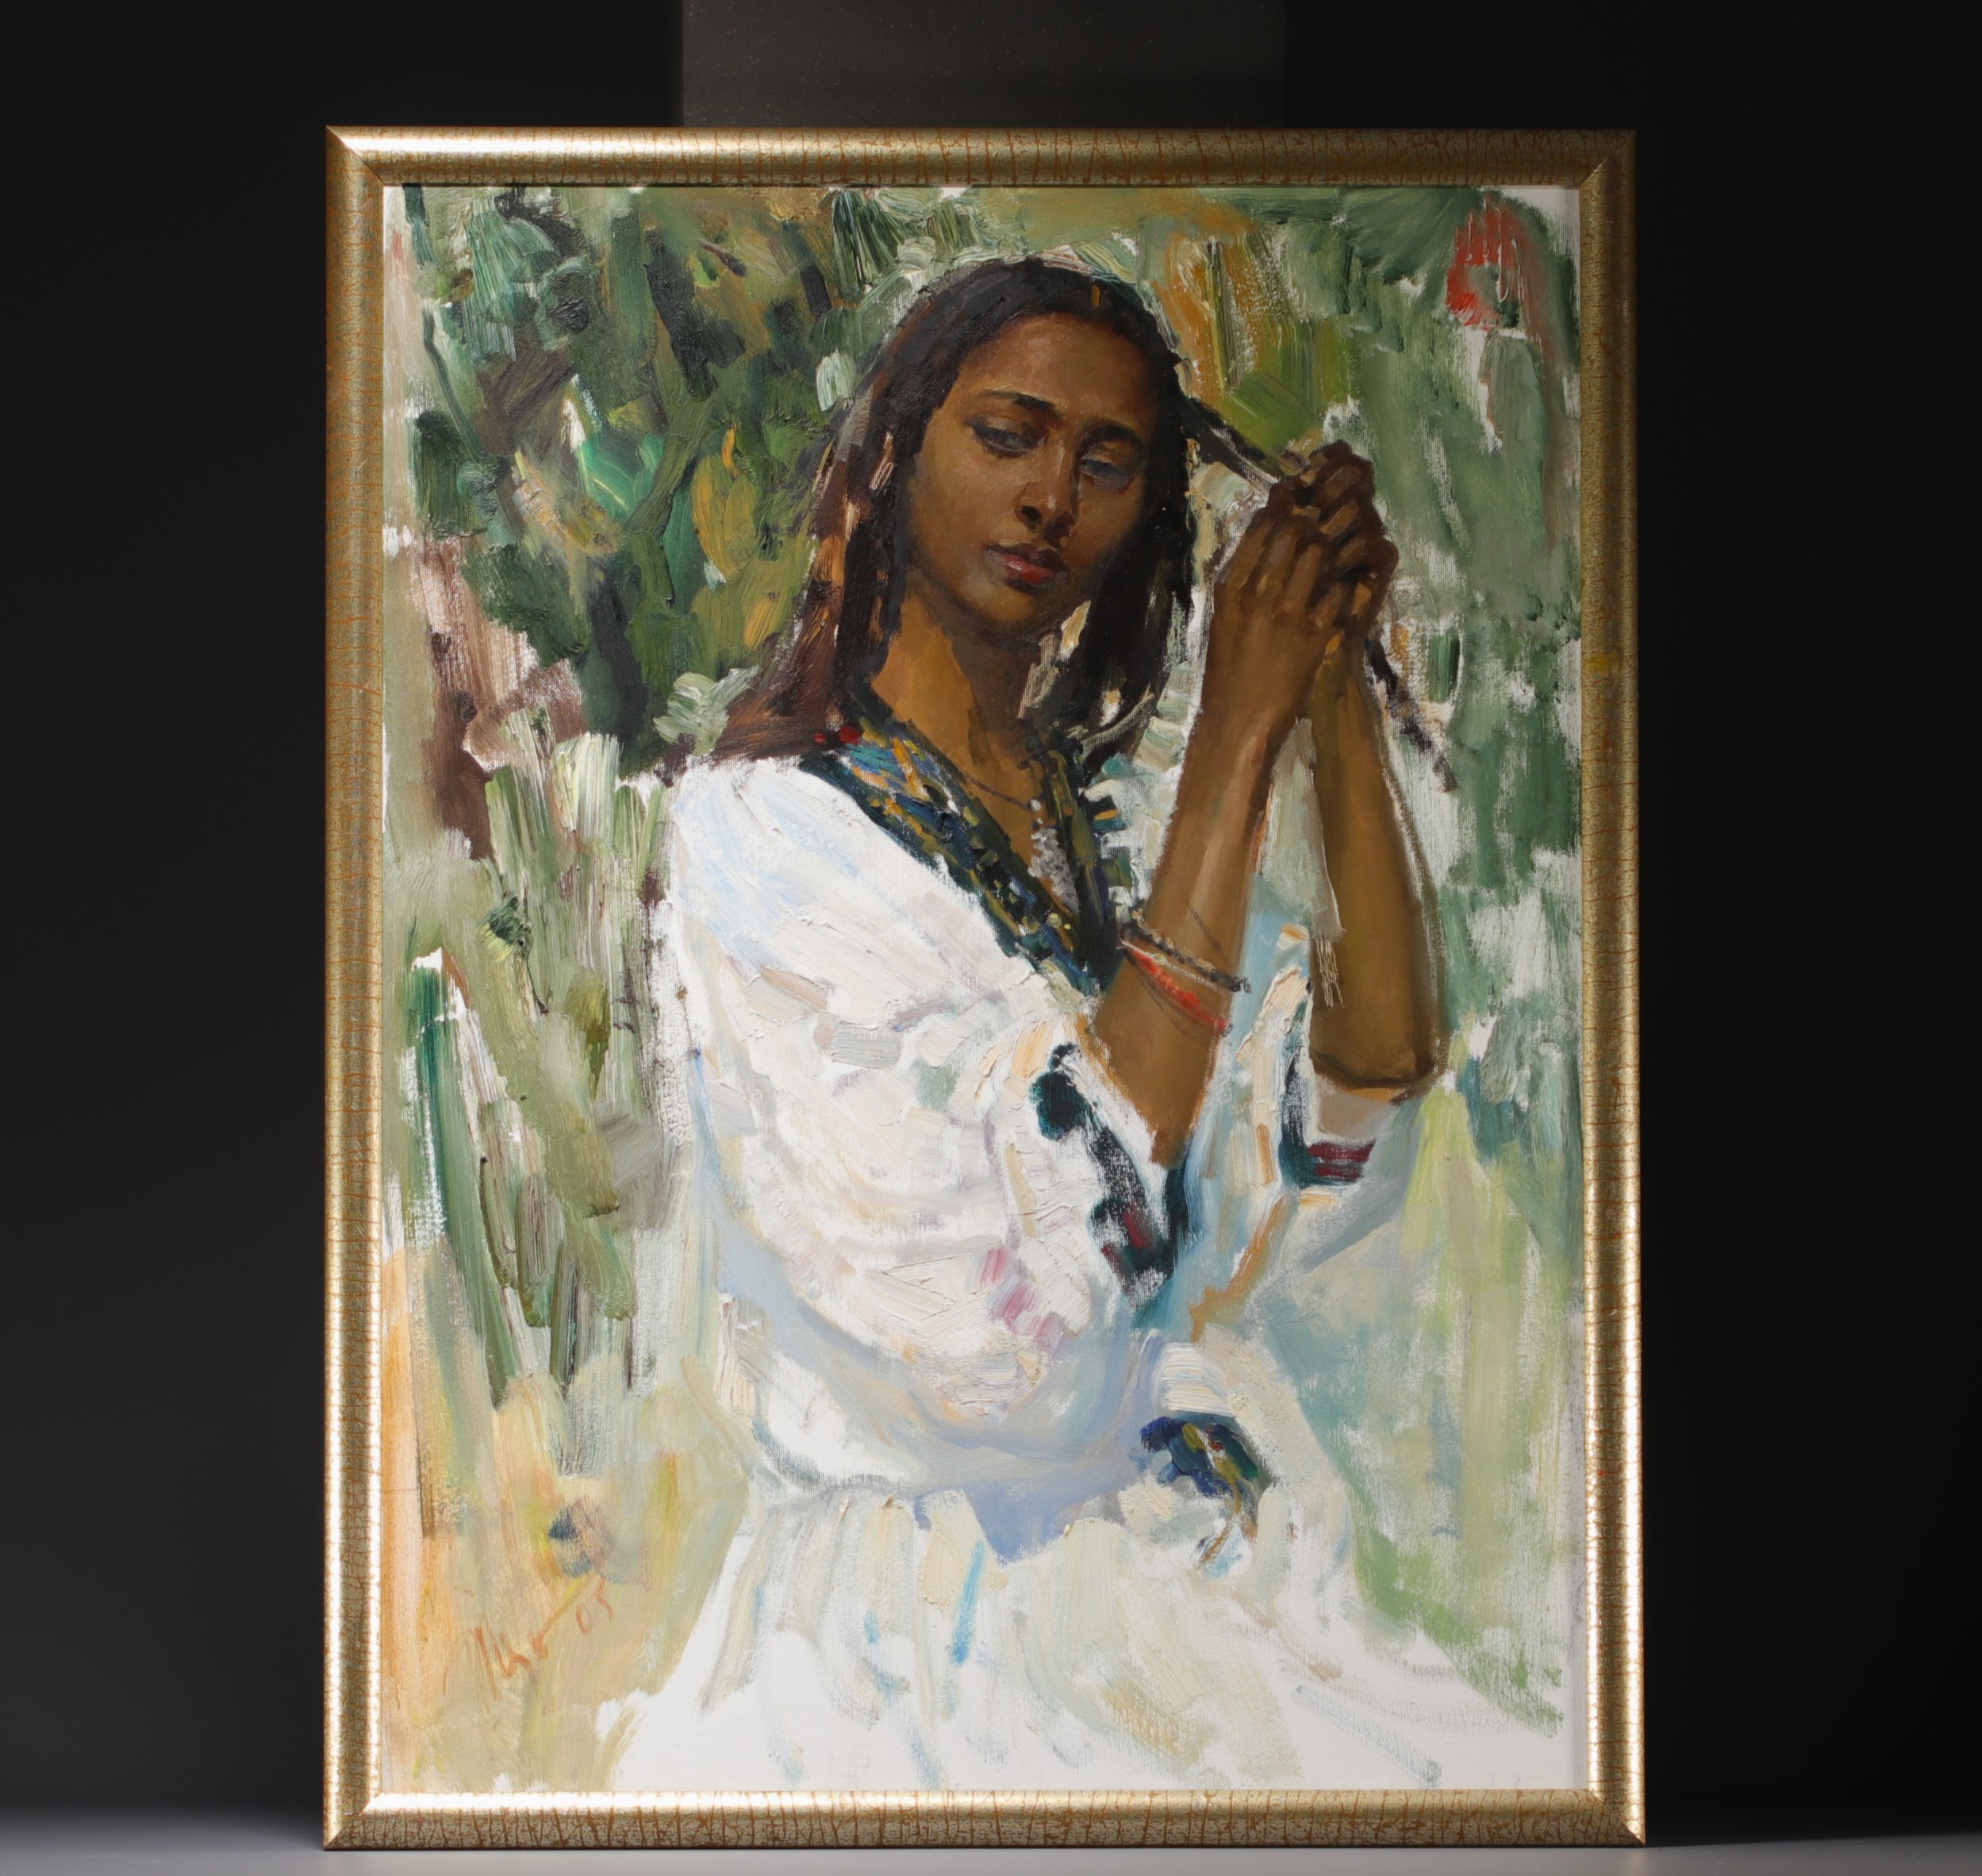 Tesfae ATSBEKHA (1970- ) "Mahlet, Jeune ethiopienne" Oil on canvas. - Image 2 of 2